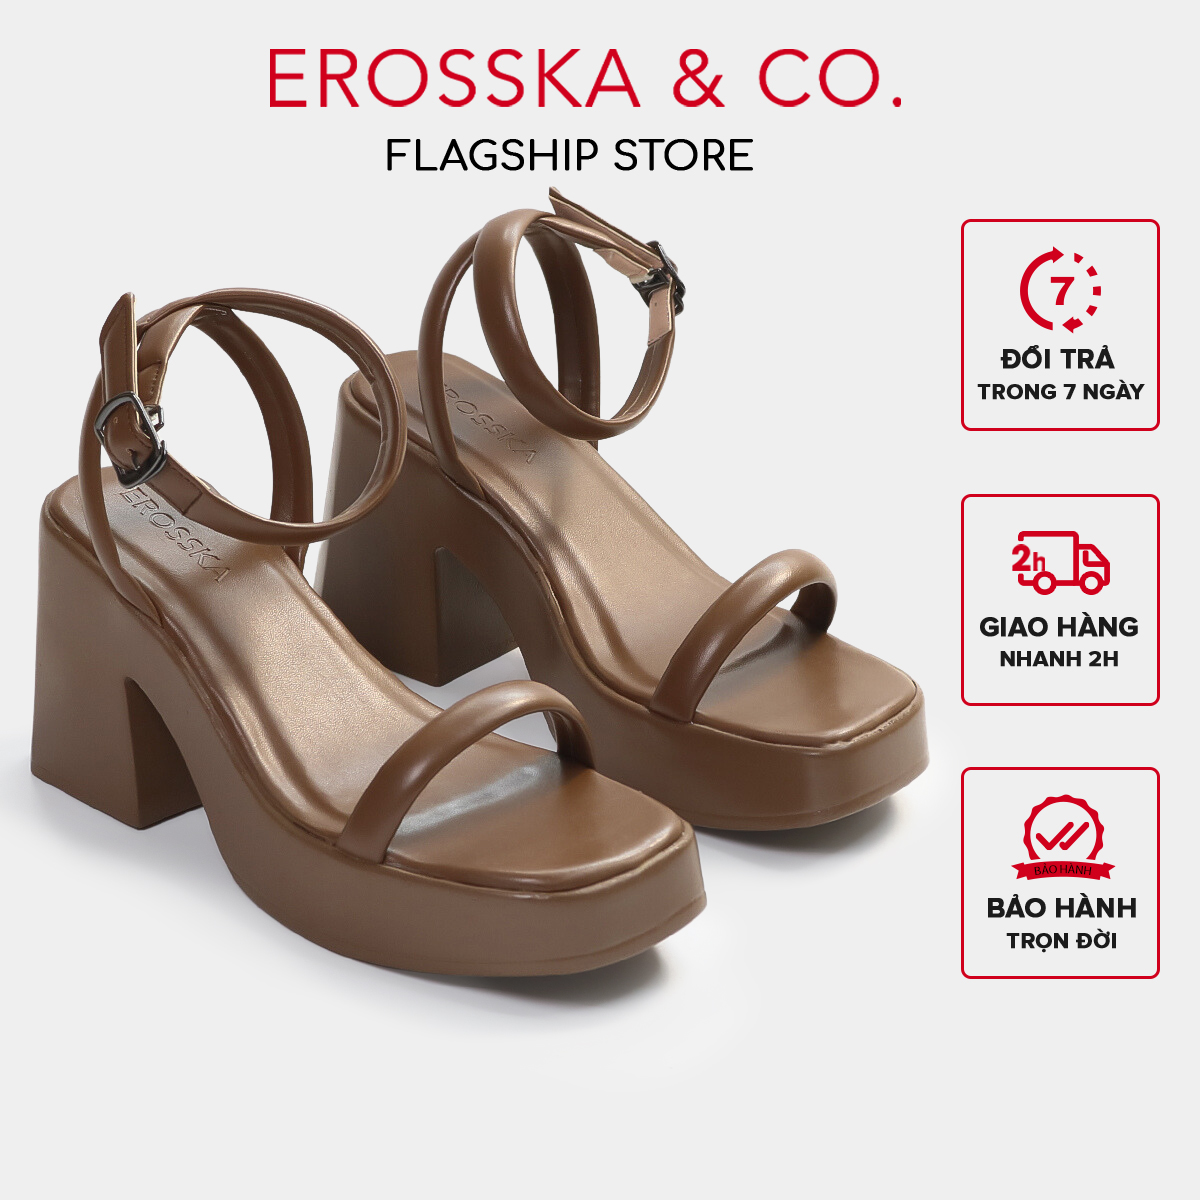 Erosska - Giày sandal cao gót nữ quai ngang kiểu dáng đơn giản màu nâu - SB029 [Form to lùi 1 size]